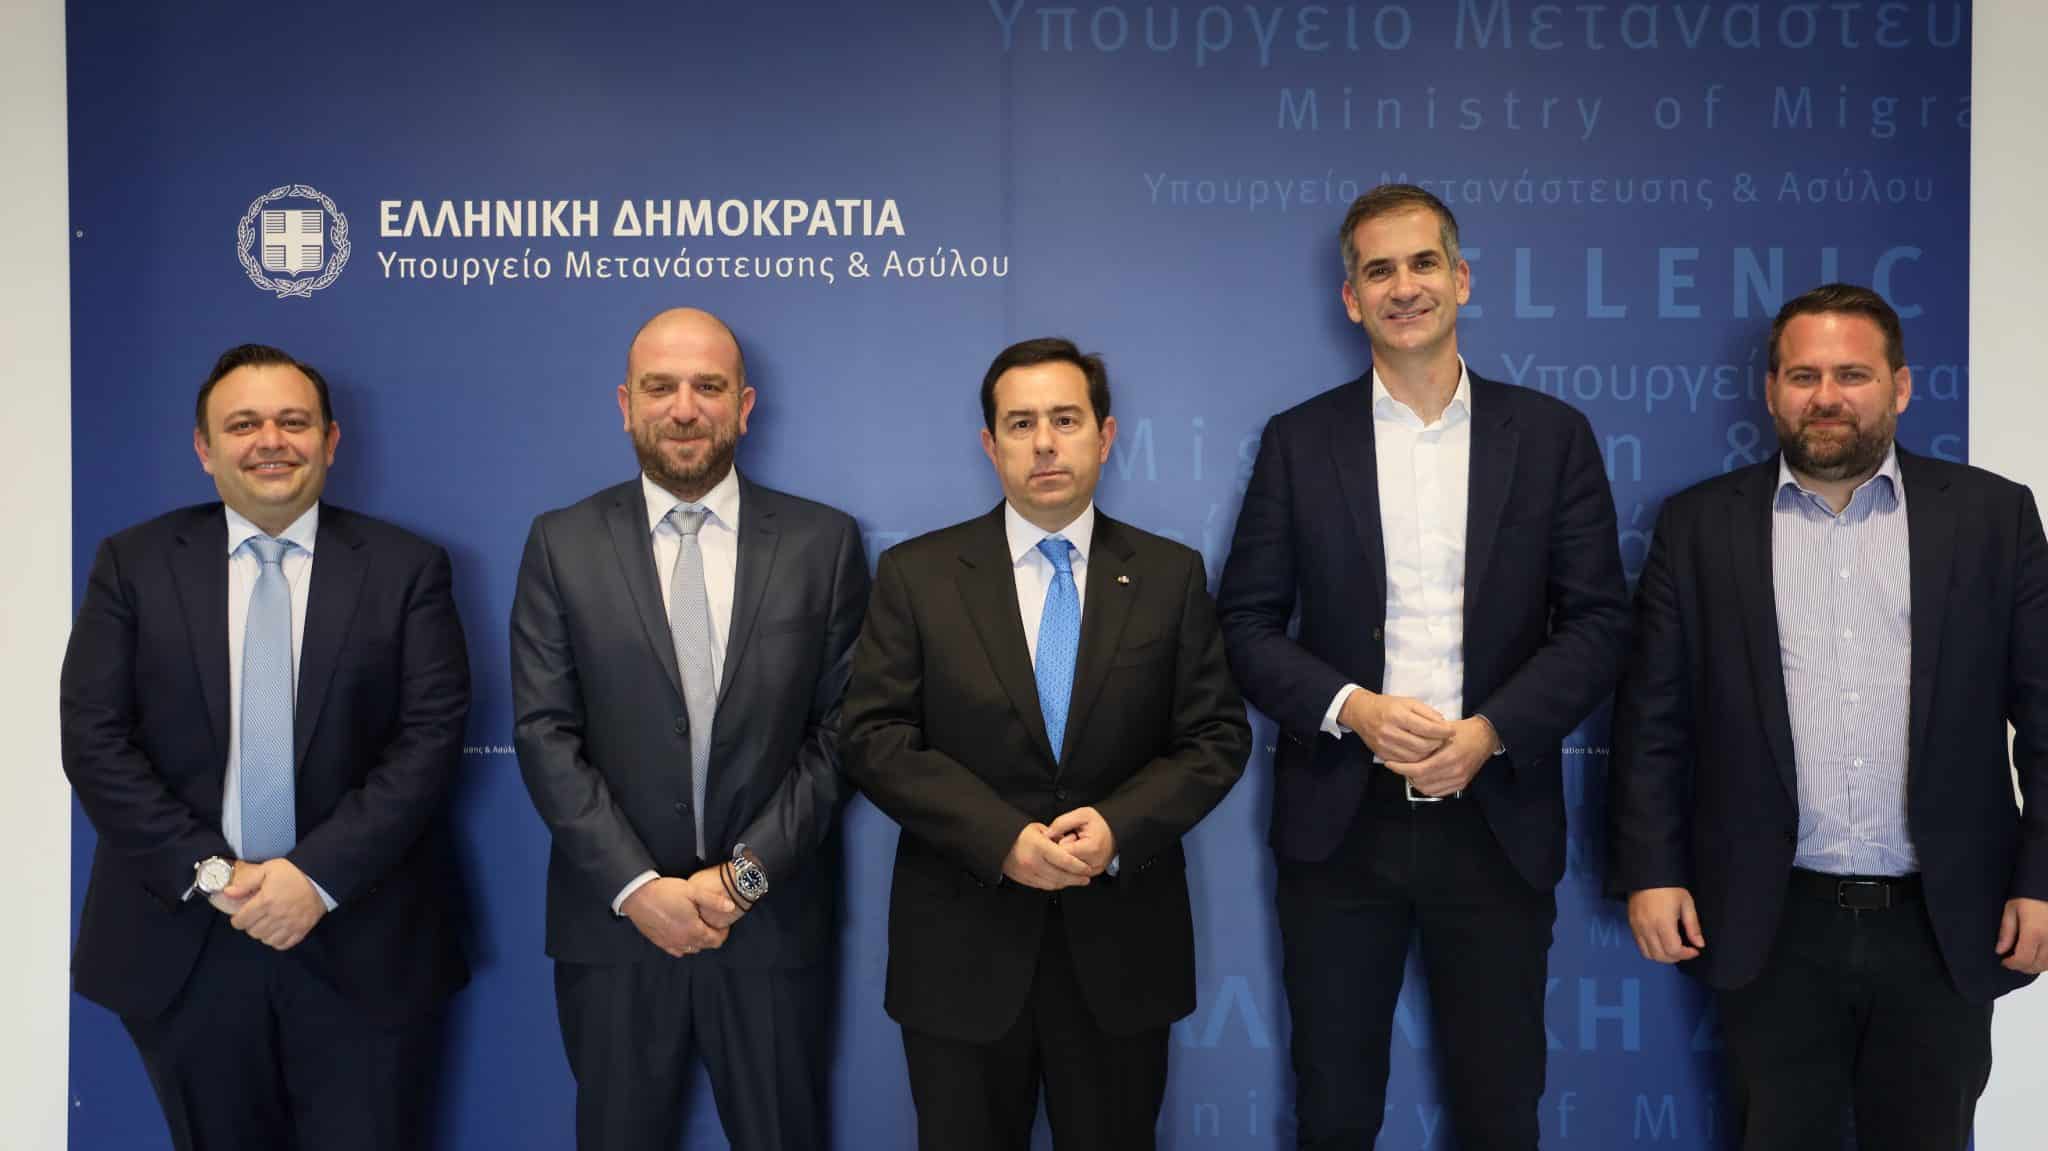 Μνημόνιο συνεργασίας μεταξύ του Υπουργείου Μετανάστευσης και Ασύλου και του Δήμου Αθηναίου, υπέγραψαν οι κ.κ. Νότης Μηταράκης και Κώστας Μπακογιάννης